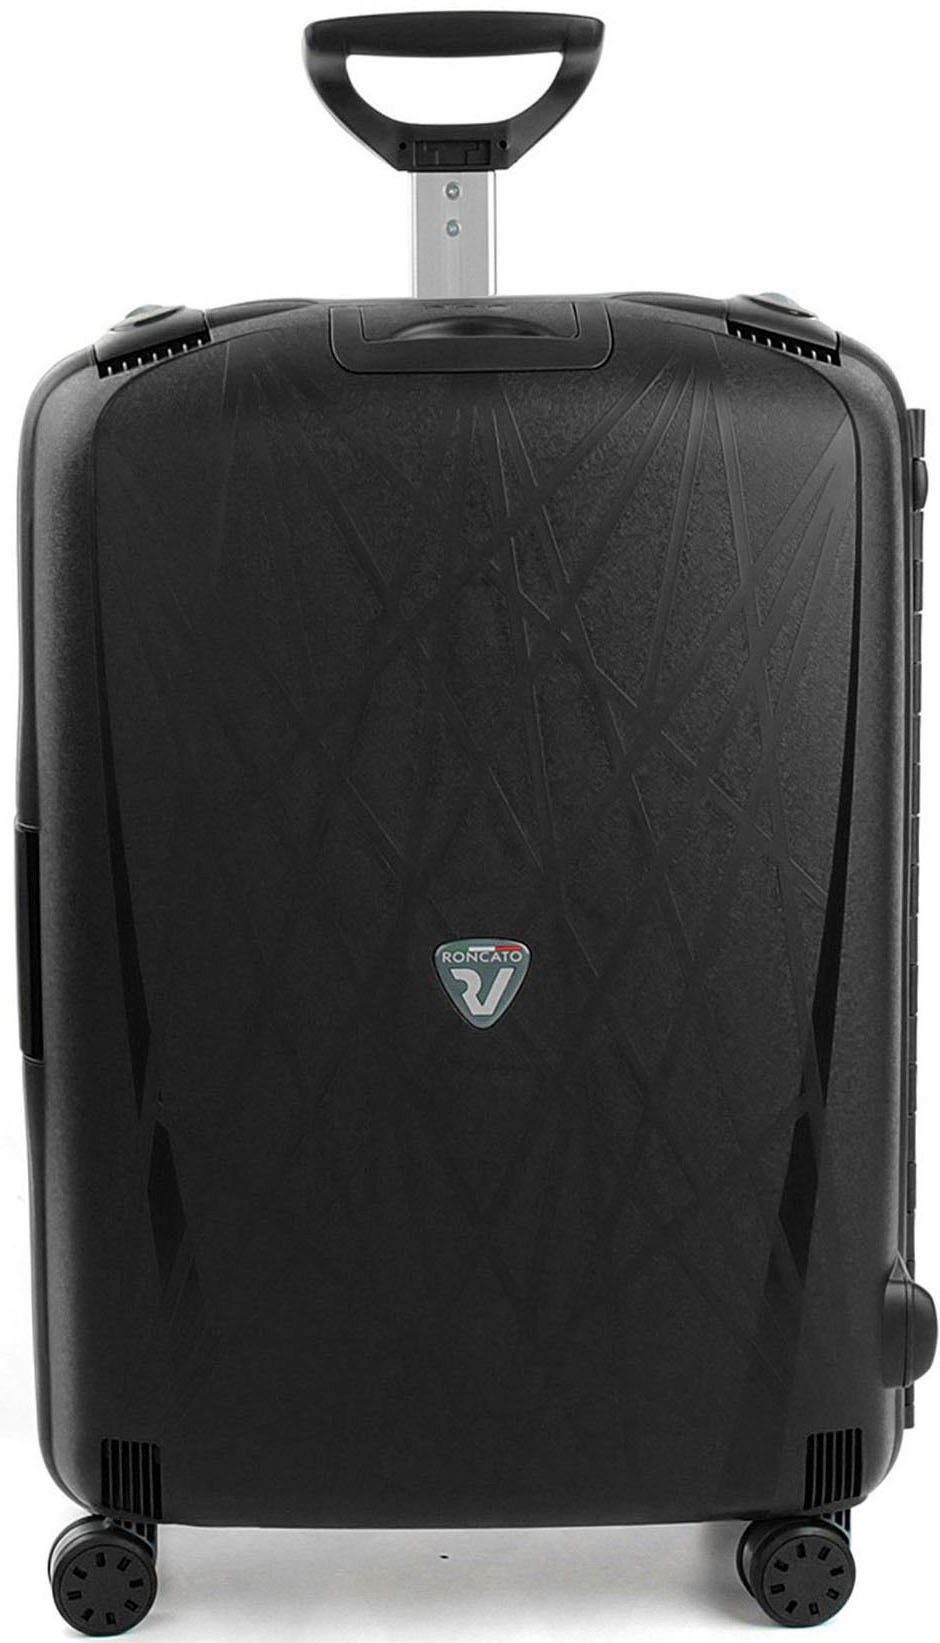 RONCATO Hartschalen-Trolley Light, 75 cm, schwarz, 4 Rollen, Koffer groß Reisegepäck Hartschalen-Koffer TSA Schloss